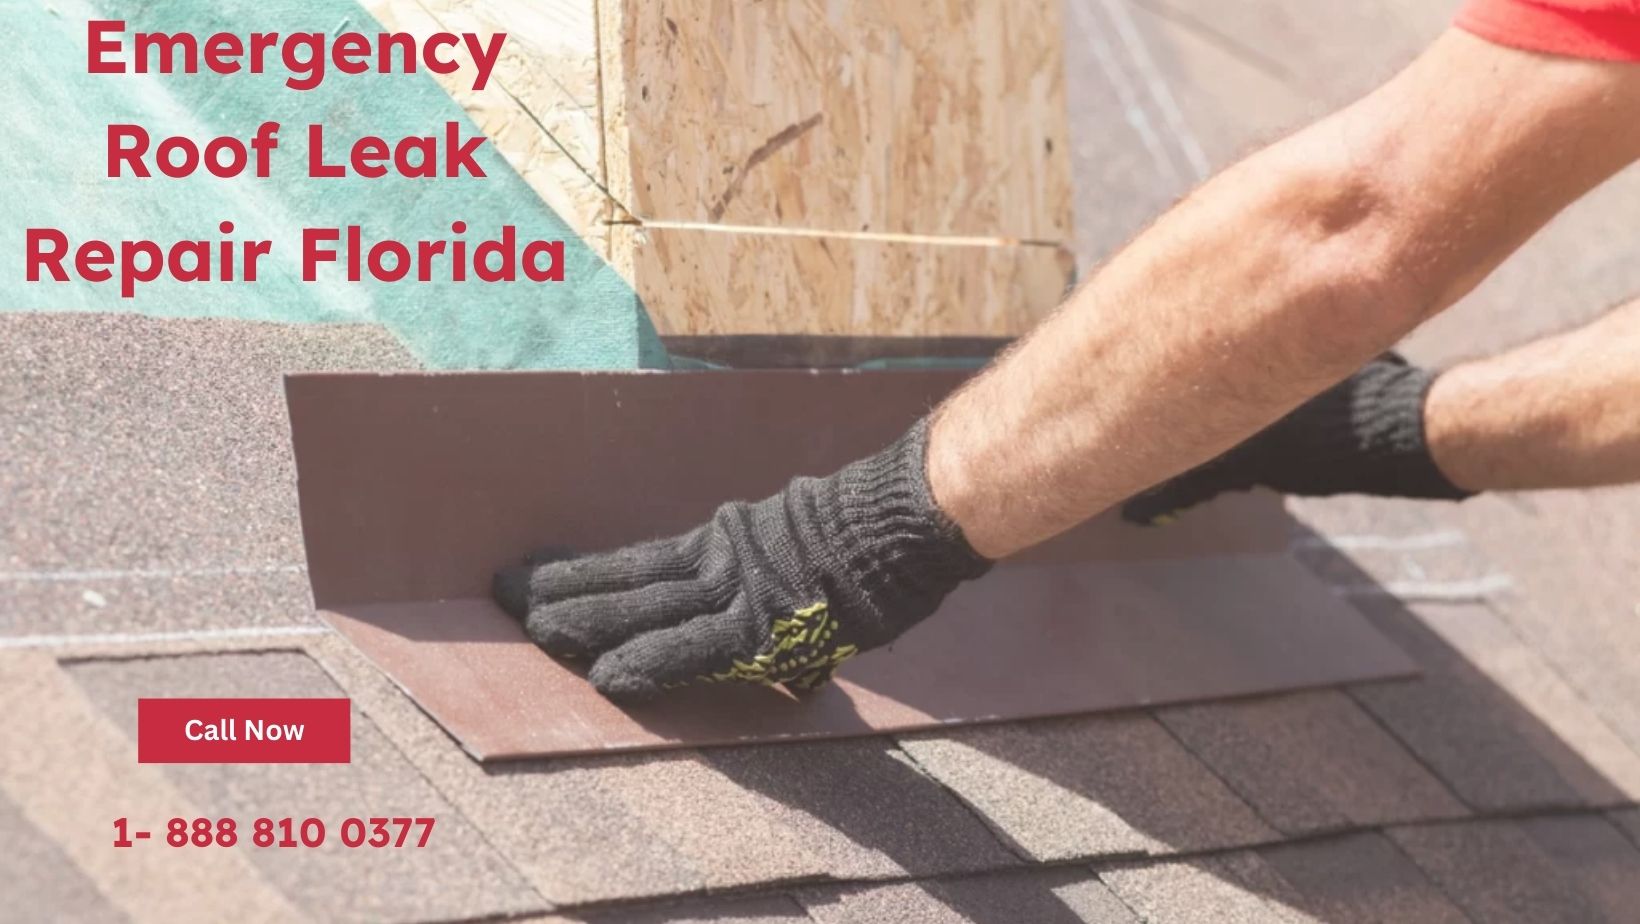 Emergency Roof Leak Repair Florida